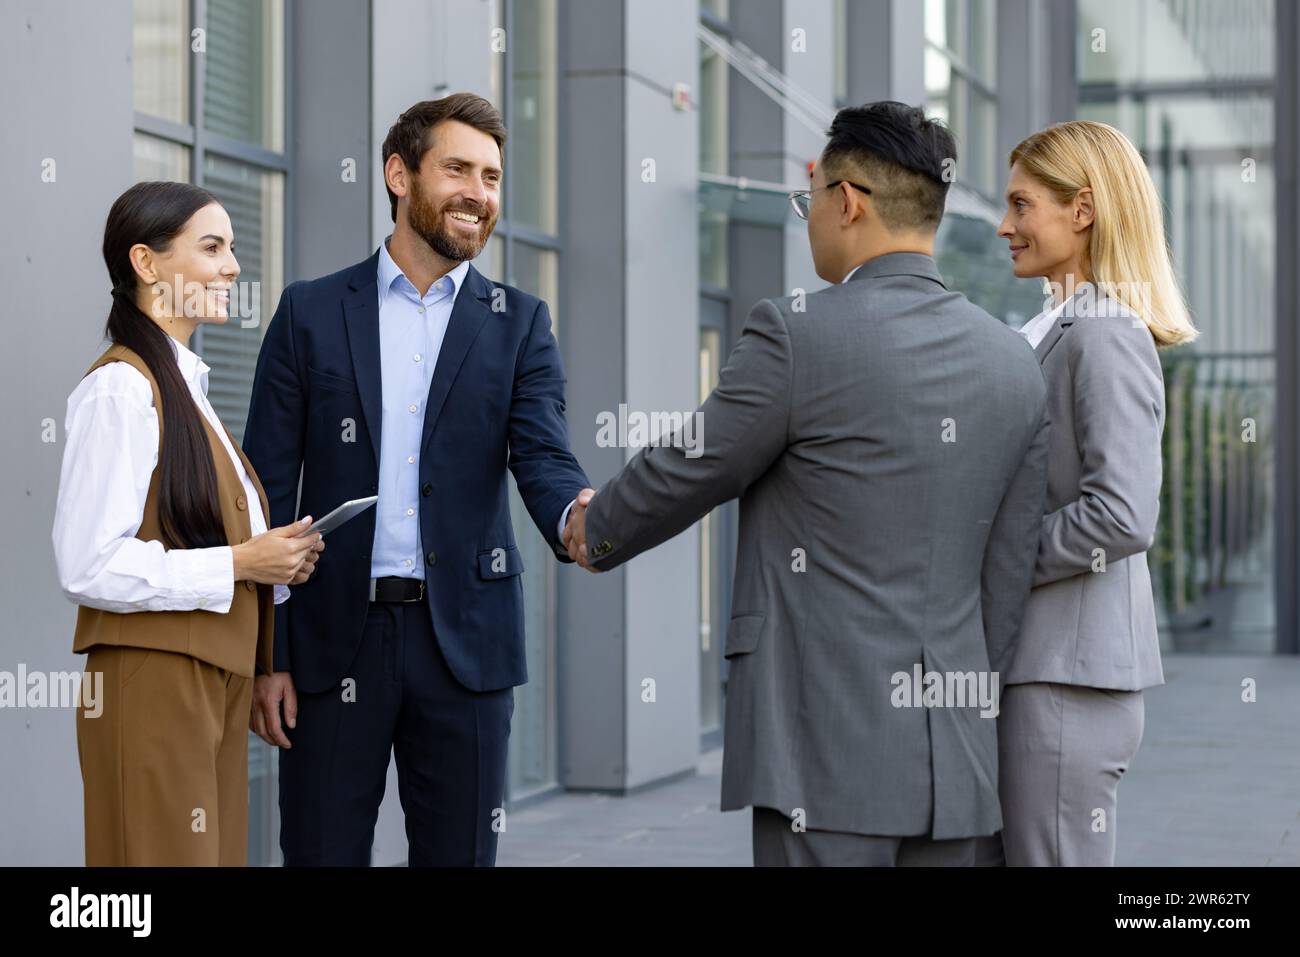 Geschäftstreffen interrassischer Geschäftsleute. Männer und Frauen stehen vor einem Bürozentrum und schütteln die Hand, um sich kennenzulernen und einen Deal zu schließen. Stockfoto